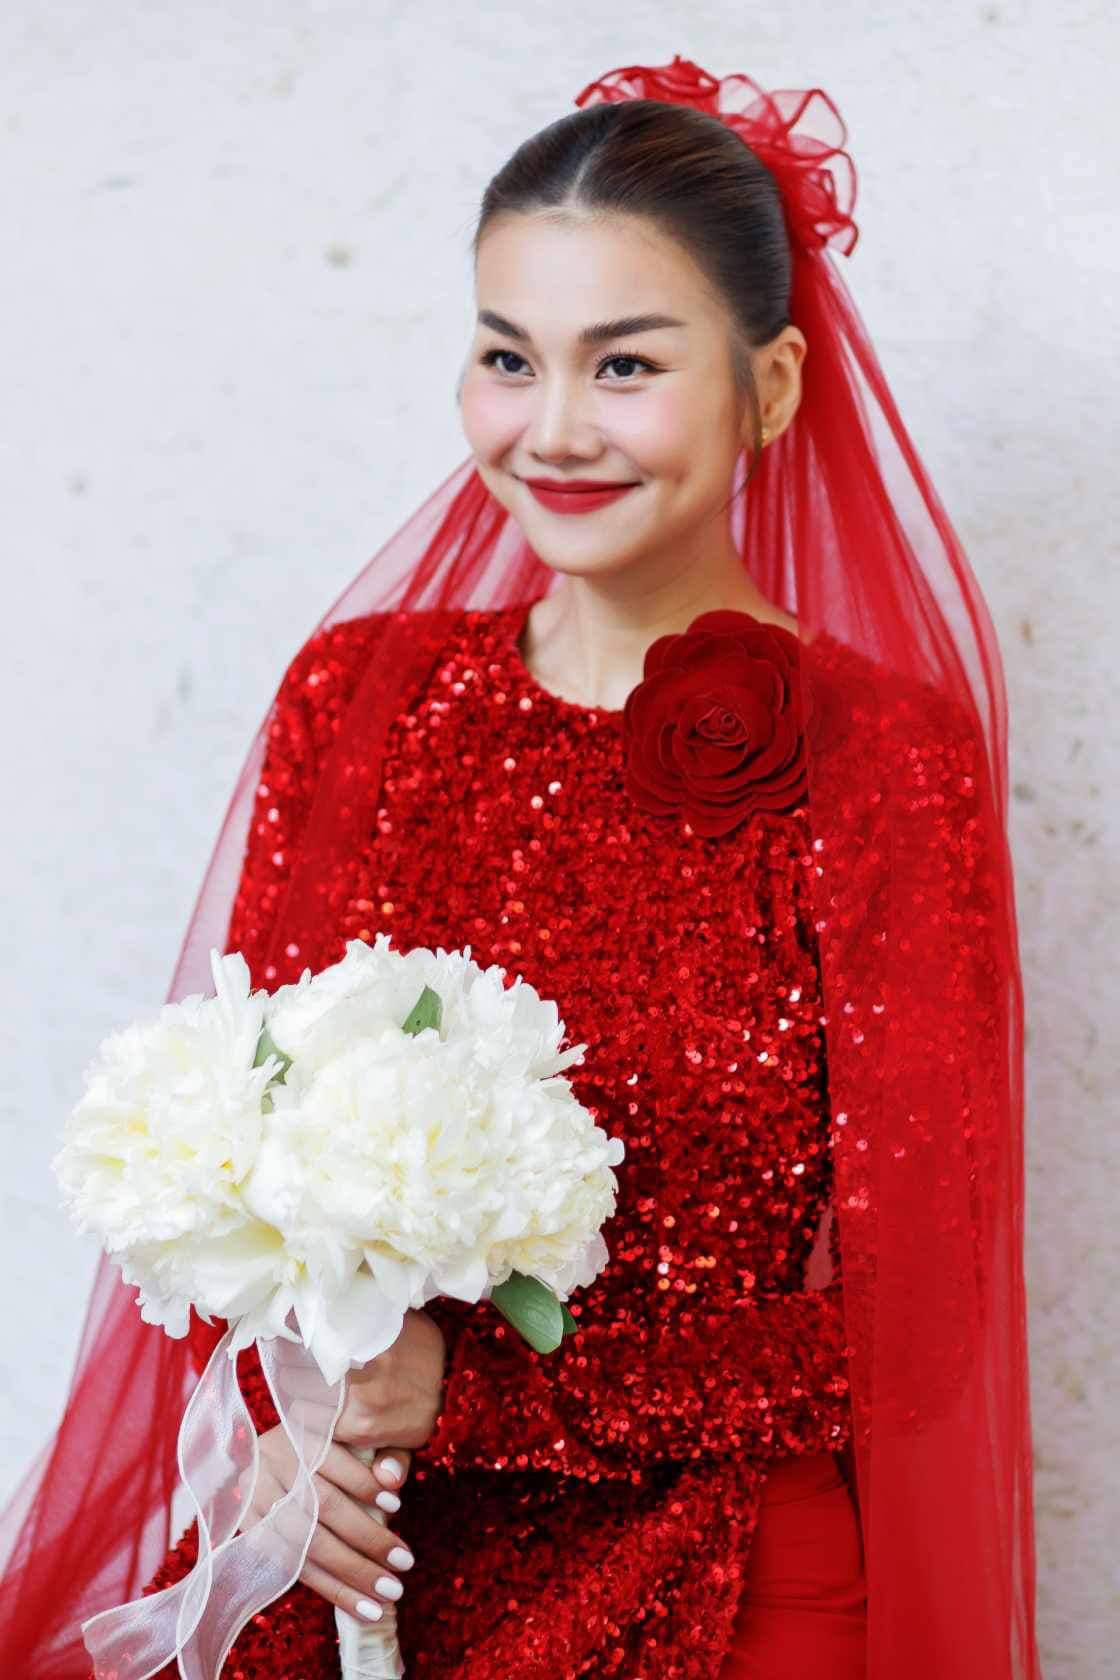 Siêu mẫu Thanh Hằng gặp vấn đề về sức khoẻ trước giờ tổ chức đám cưới - ảnh 1